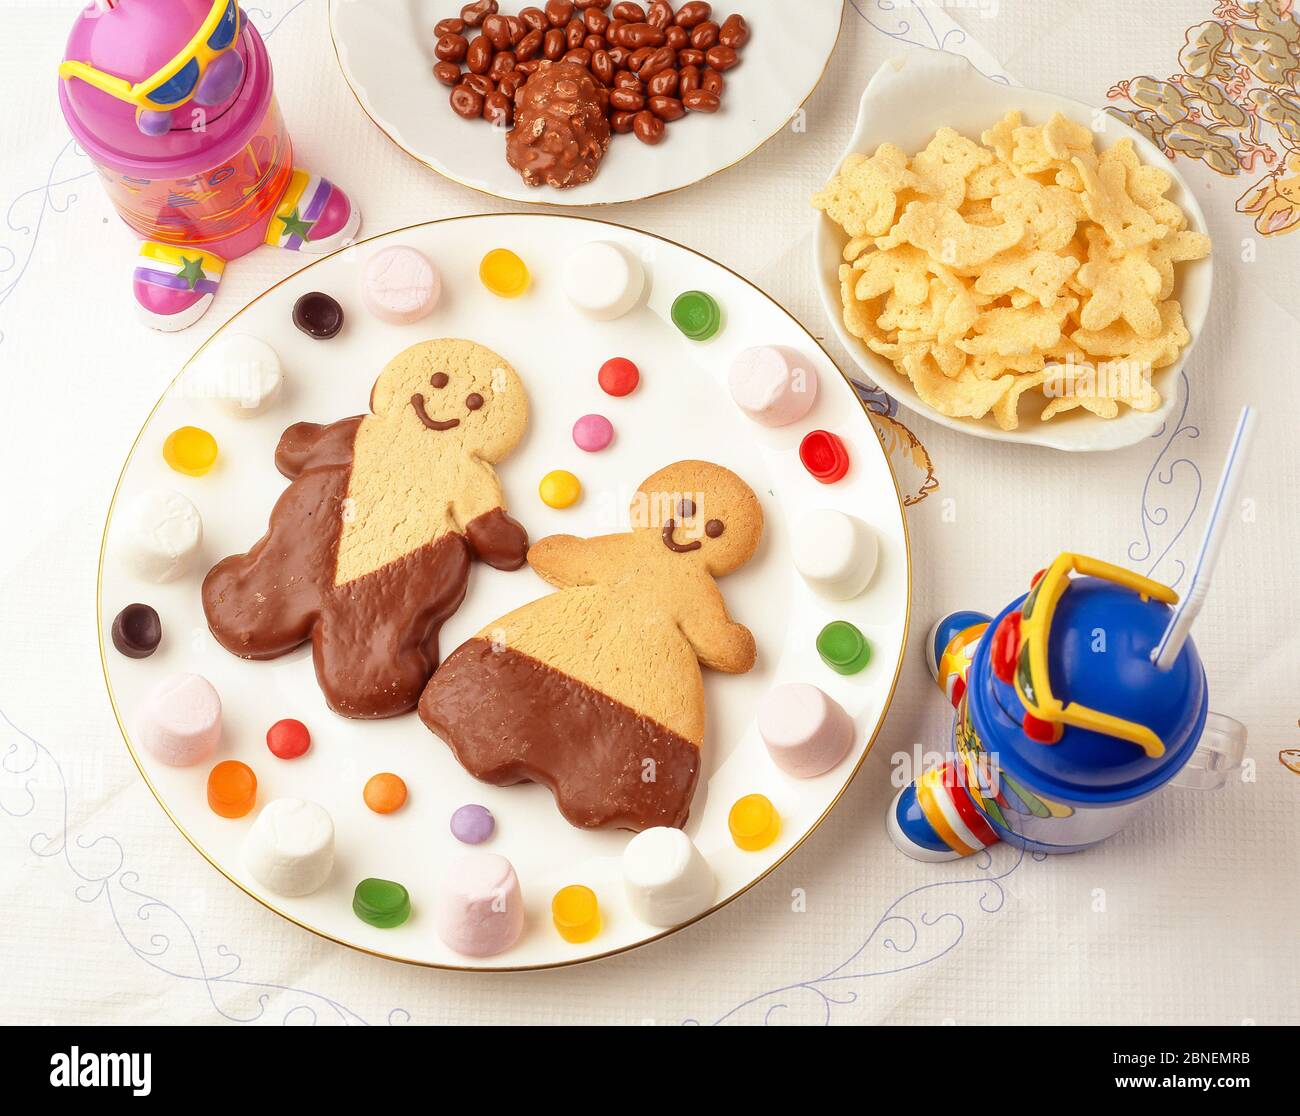 Assiette pour enfants avec personnages en pain d'épice, bonbons et chips, Winkfield, Berkshire, Angleterre, Royaume-Uni Banque D'Images